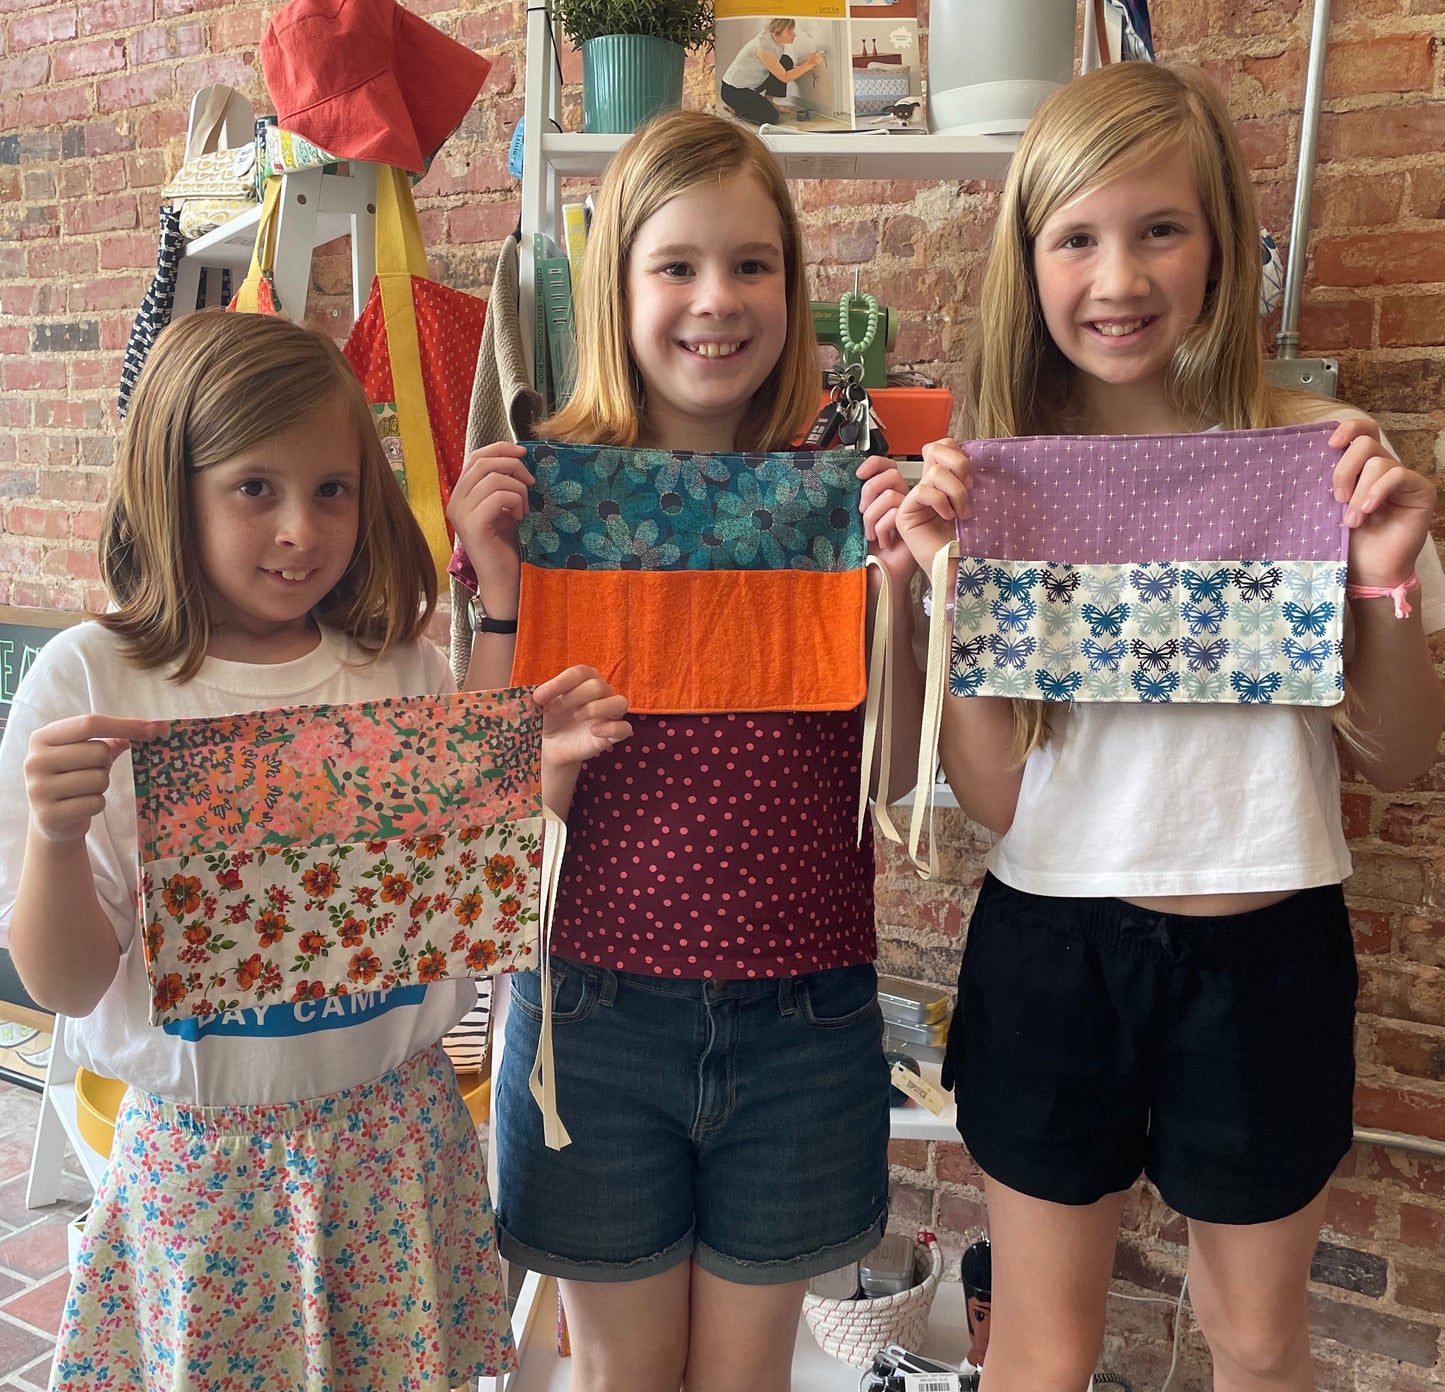 KIDS Sewing Camp - Sew Crafty! June 3 - 7